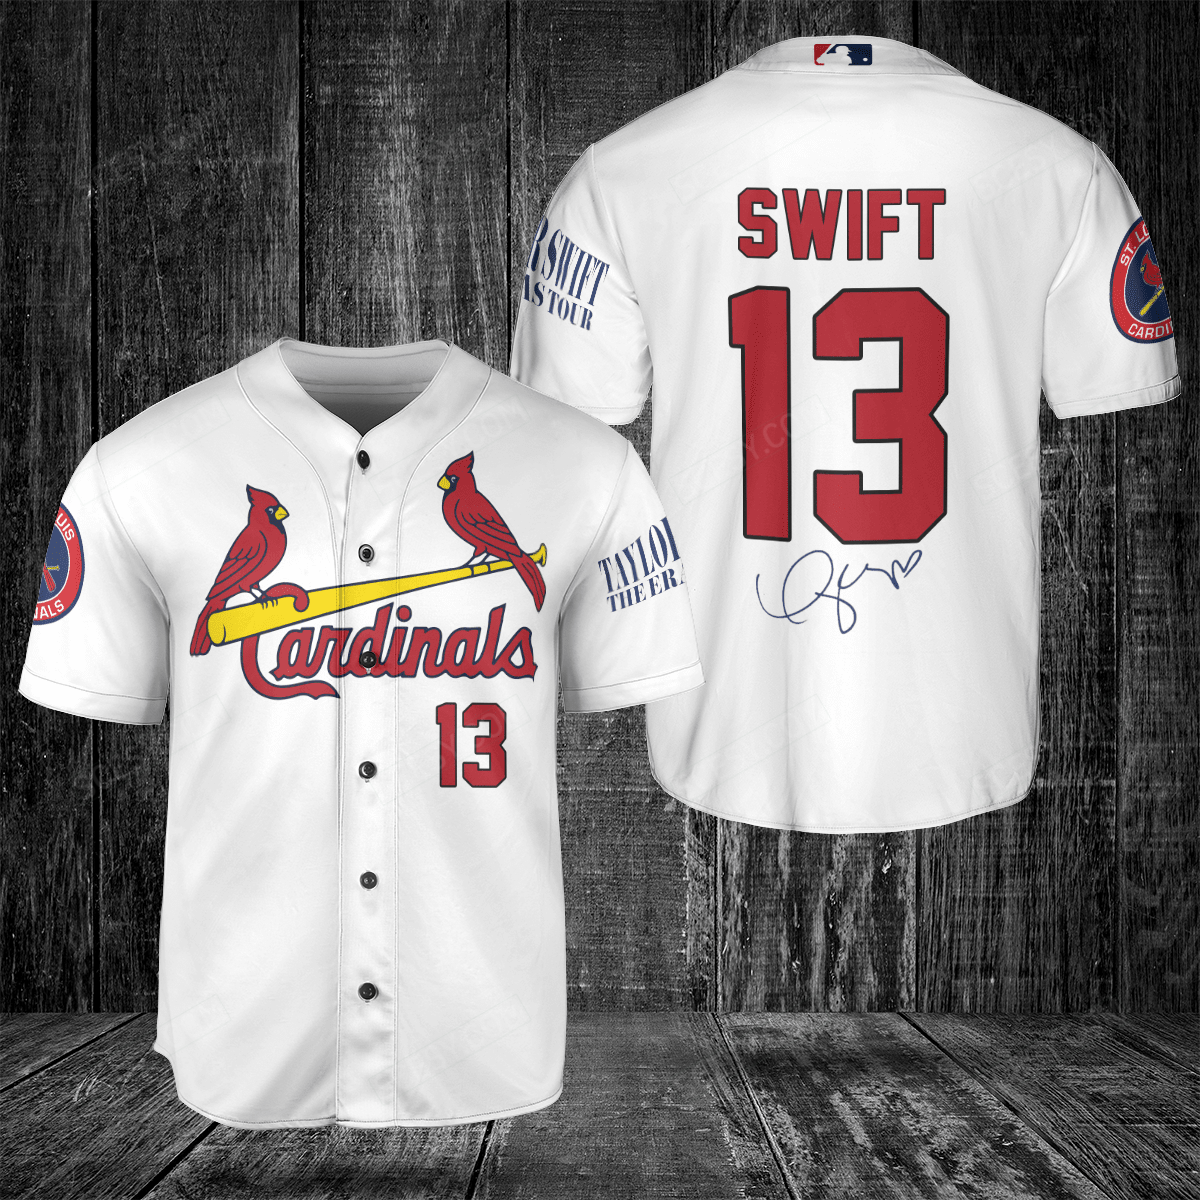 cardinals jerseys